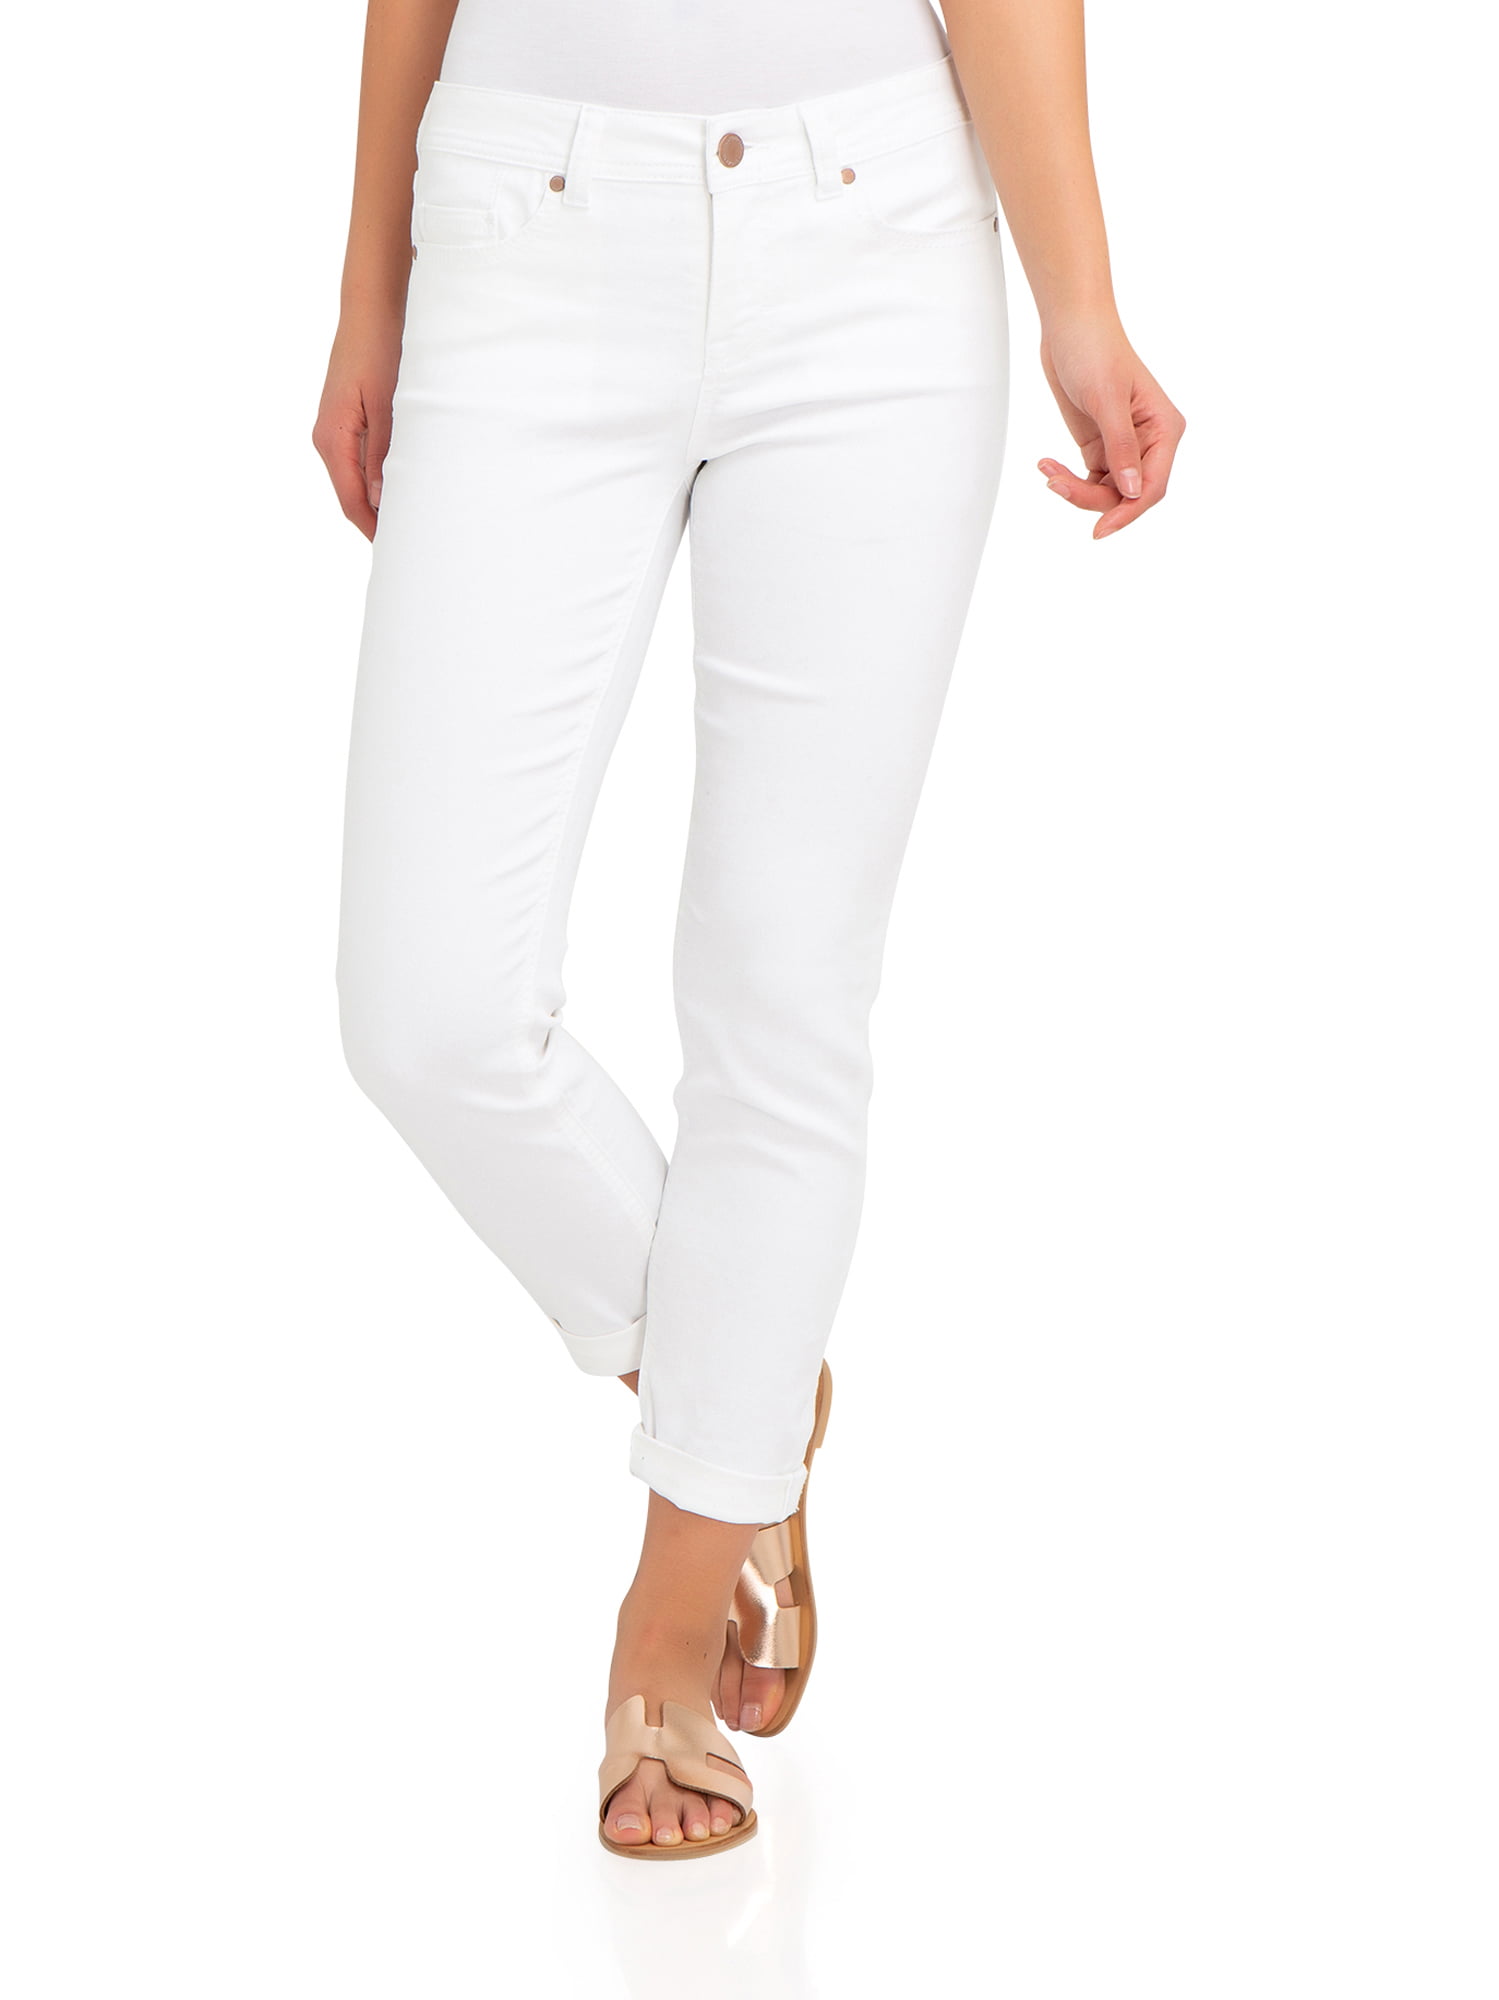 Jordache Women's Mid Rise Skinny Jeans - Walmart.com